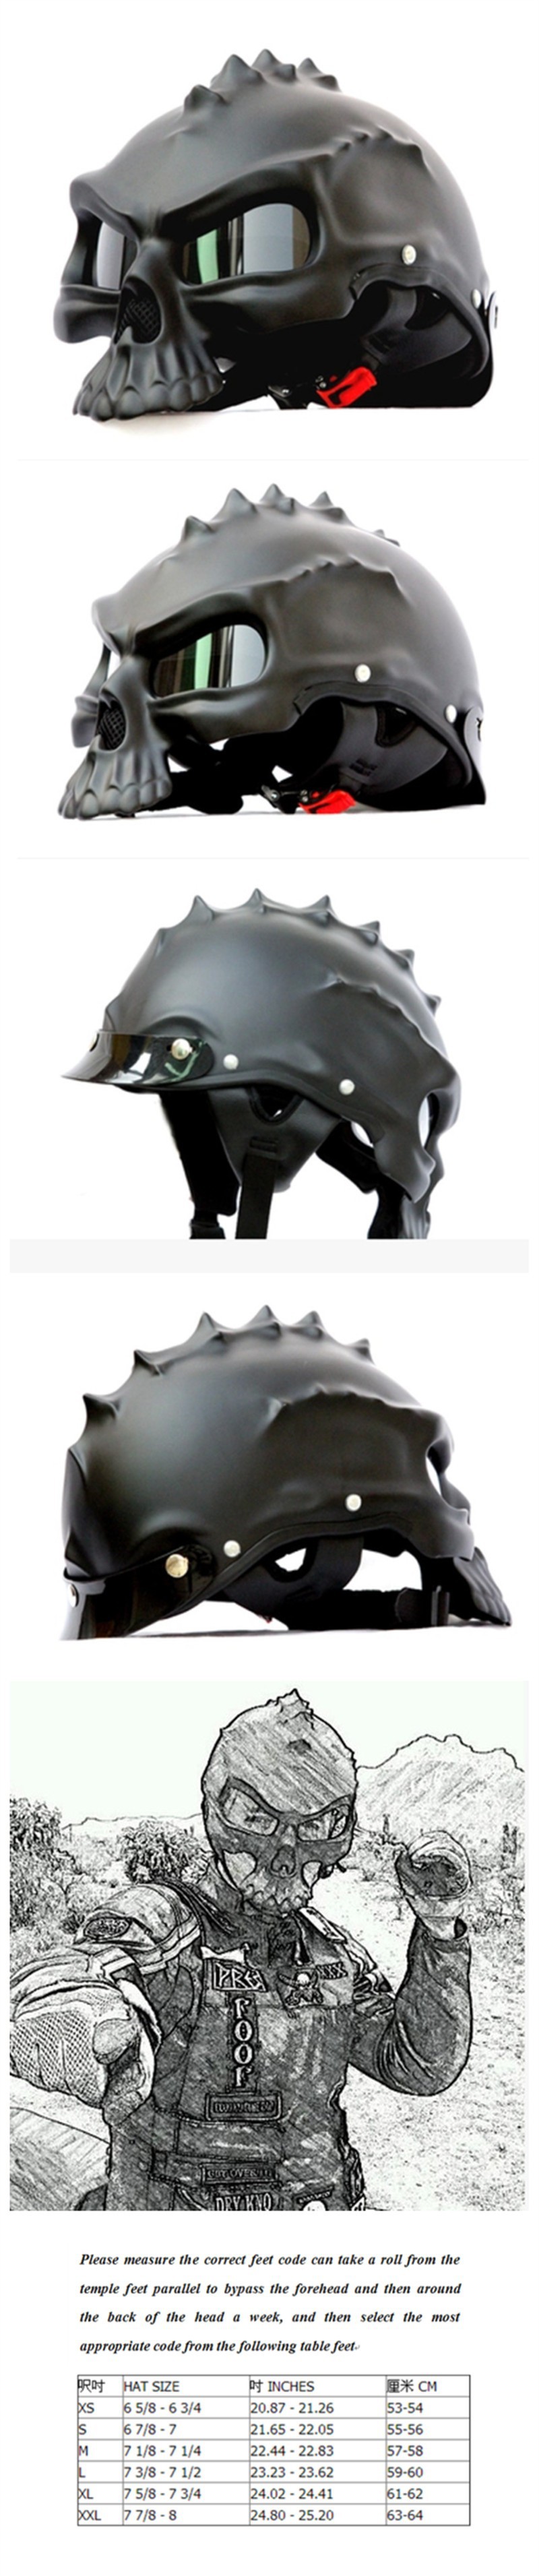 HT03F Standard Skull Helmet Harley Motorcycle Half Helmet Matt Black 